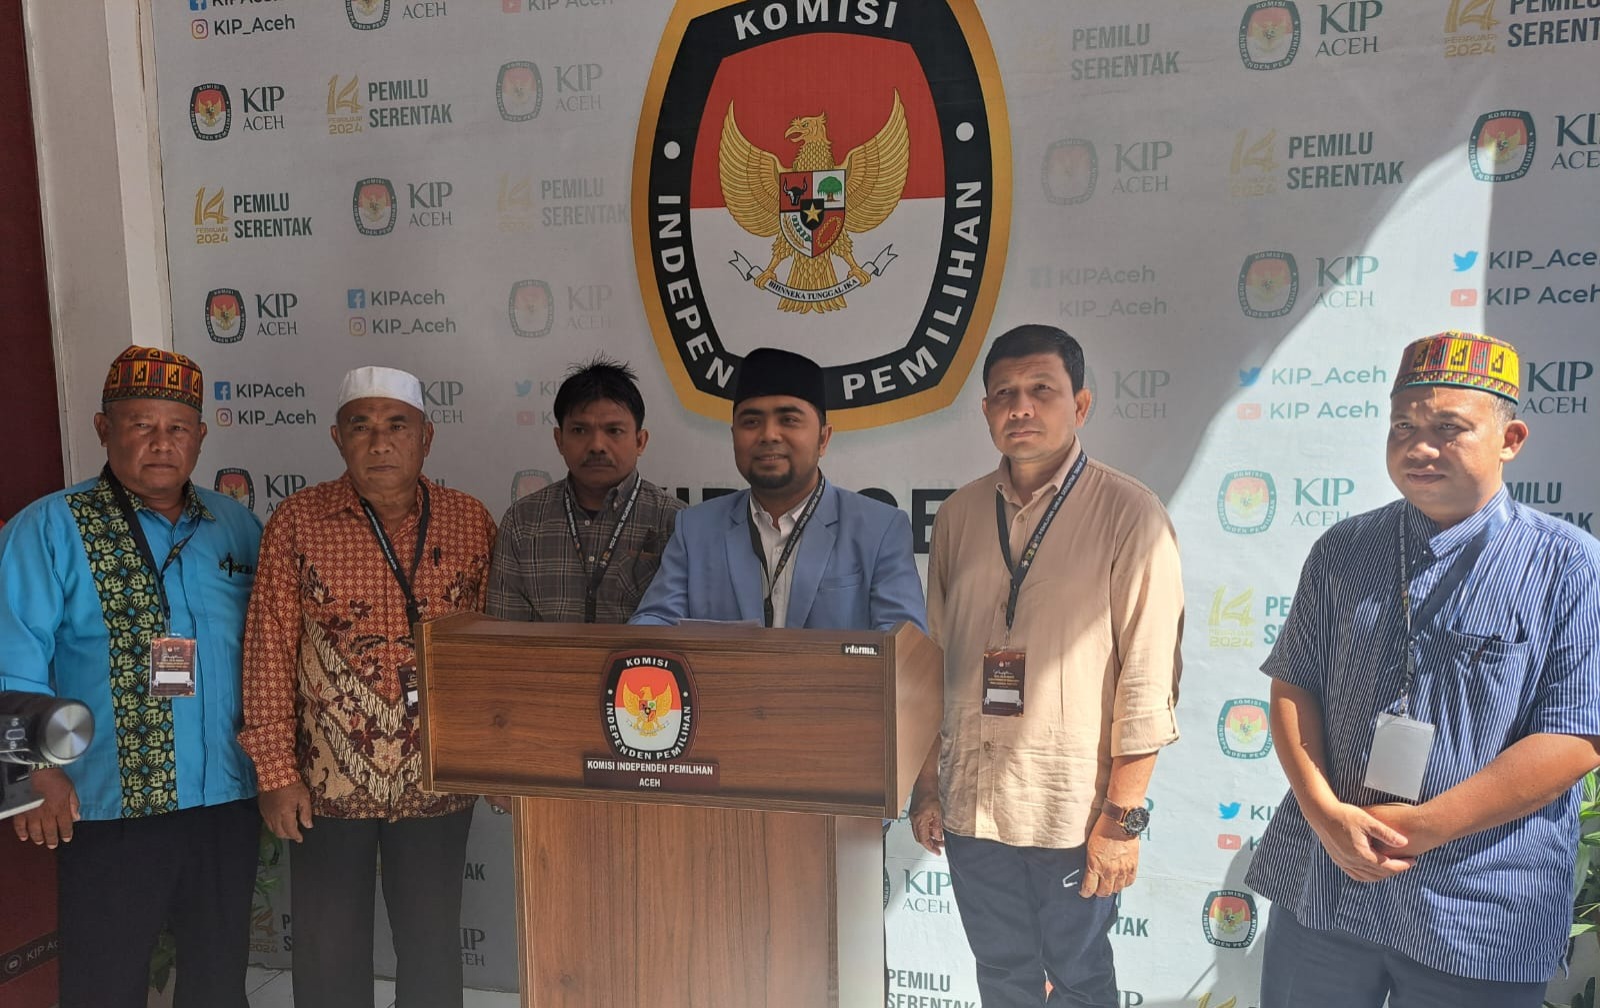 Ketua Umum BKPRMI Aceh, Dr. Mulia Rahman, S.Pd.I, MA mendaftarkan pencalonan DPD RI